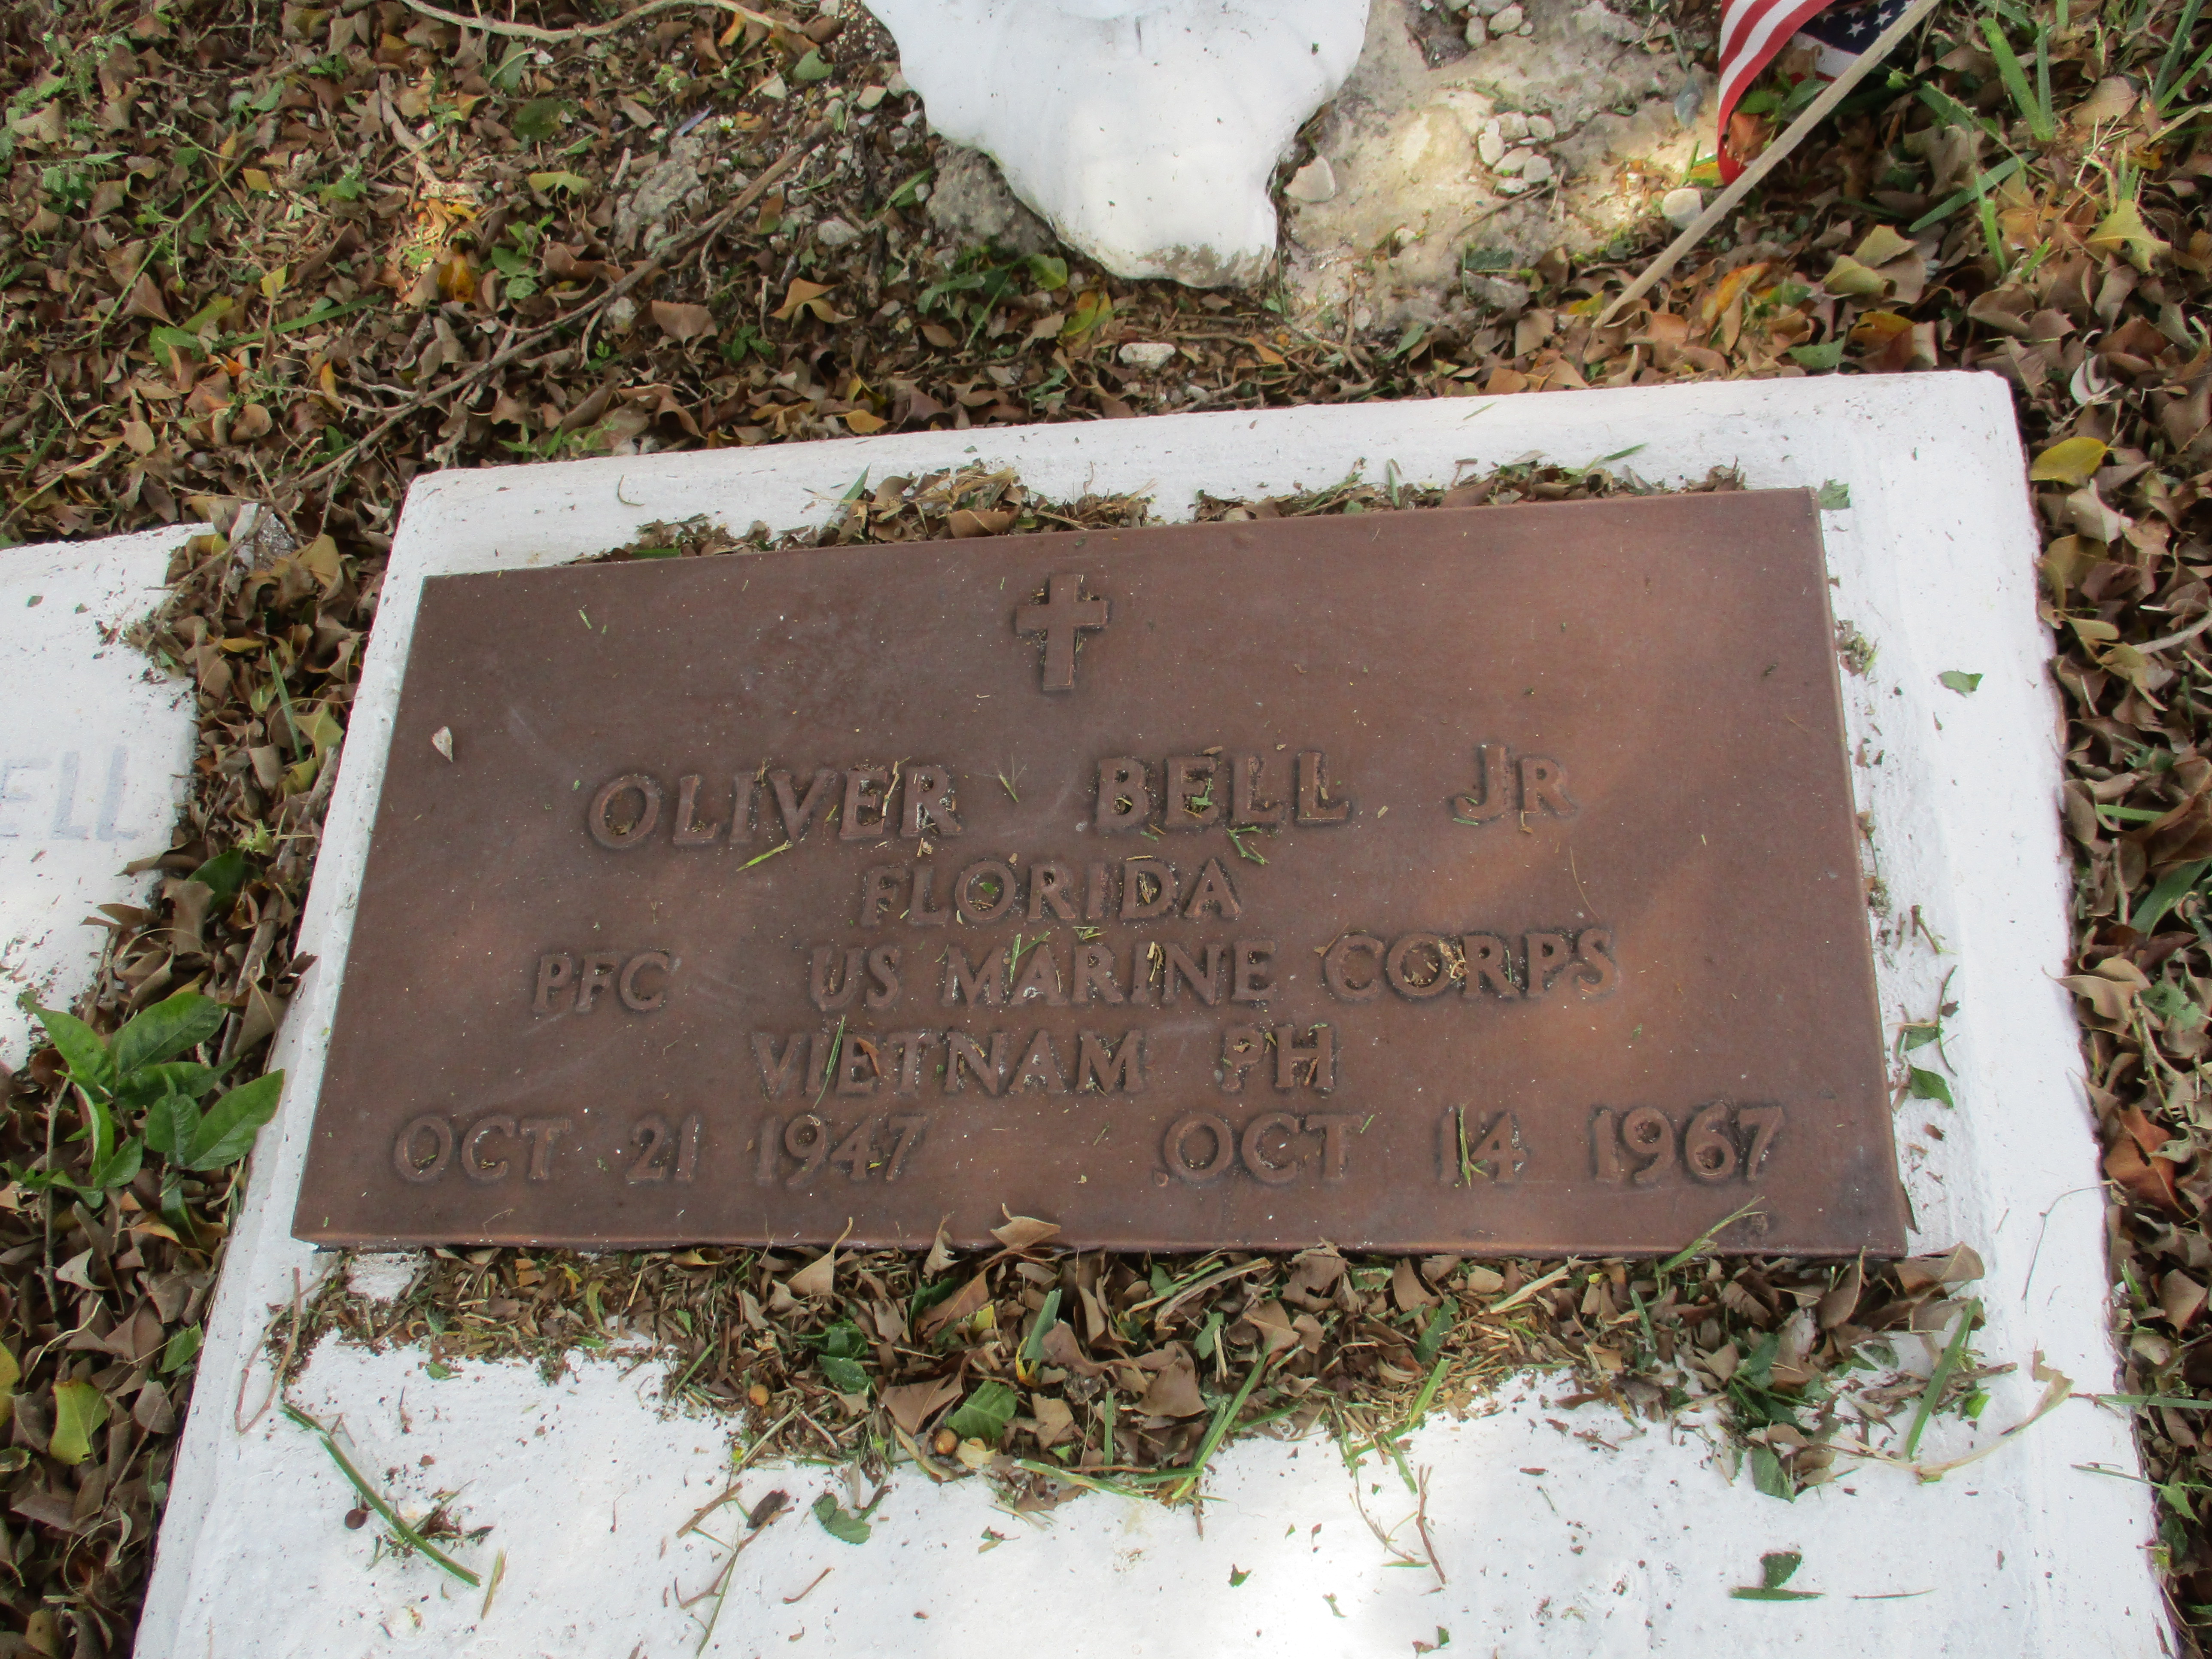 Oliver Bell, Jr